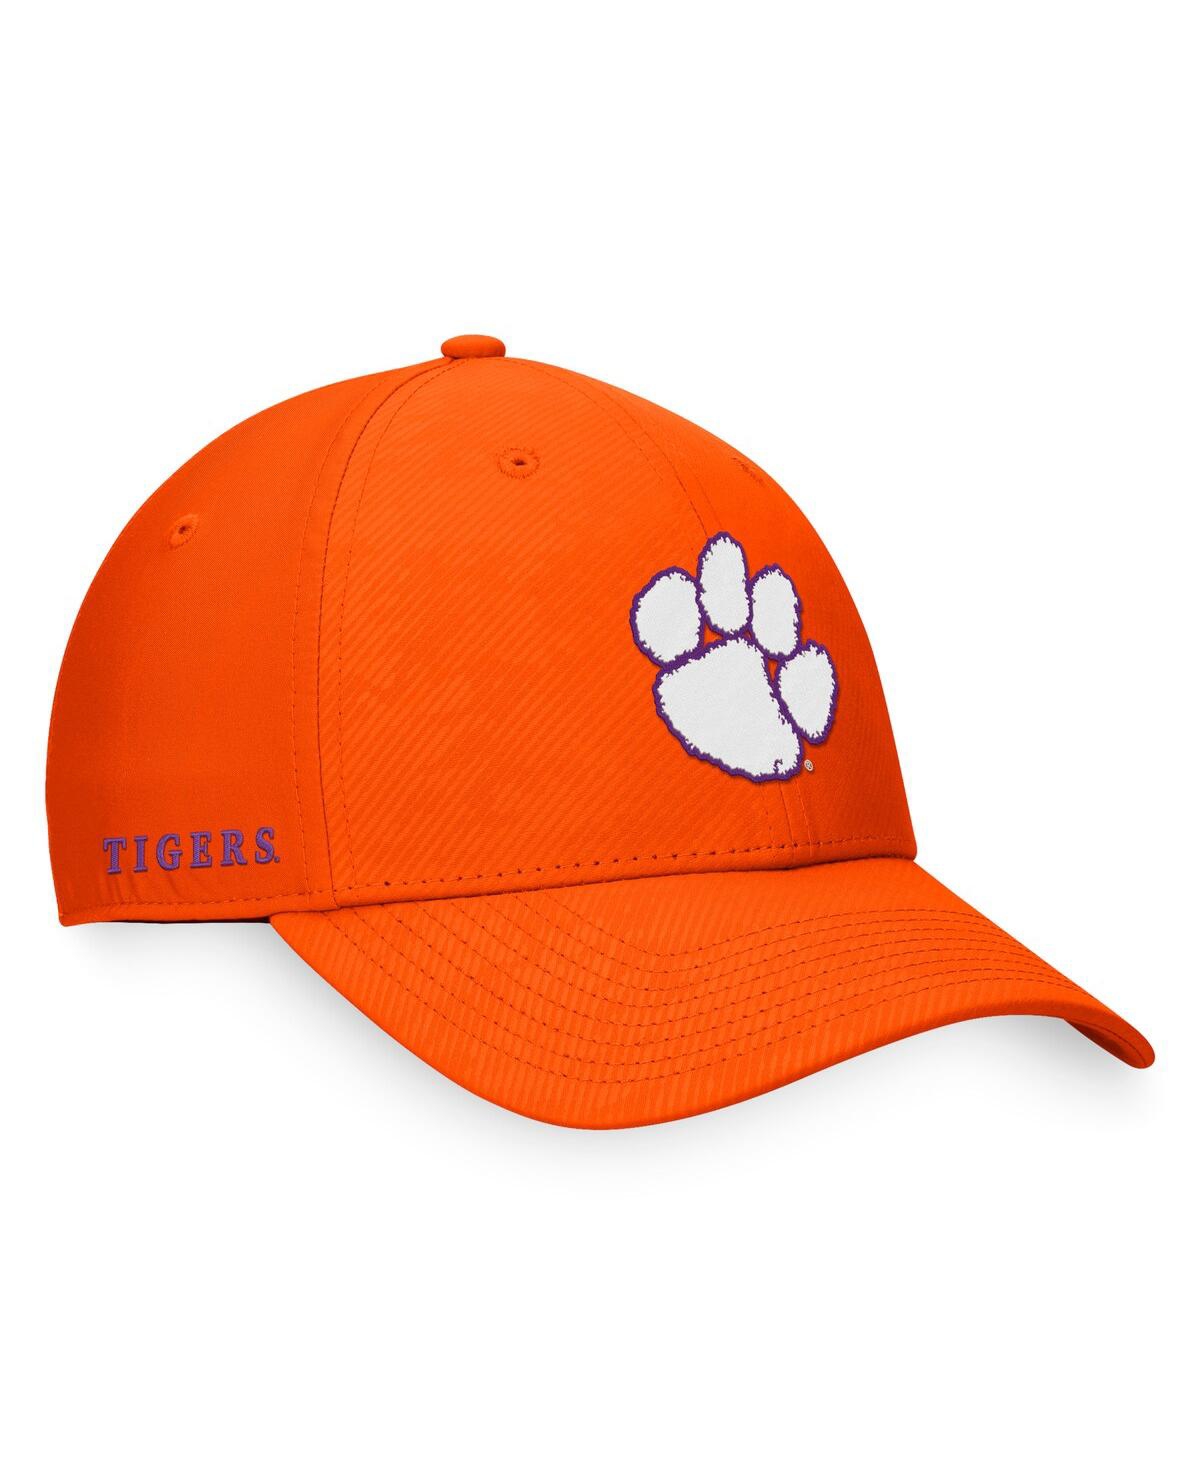 Shop Top Of The World Men's  Orange Clemson Tigers Deluxe Flex Hat